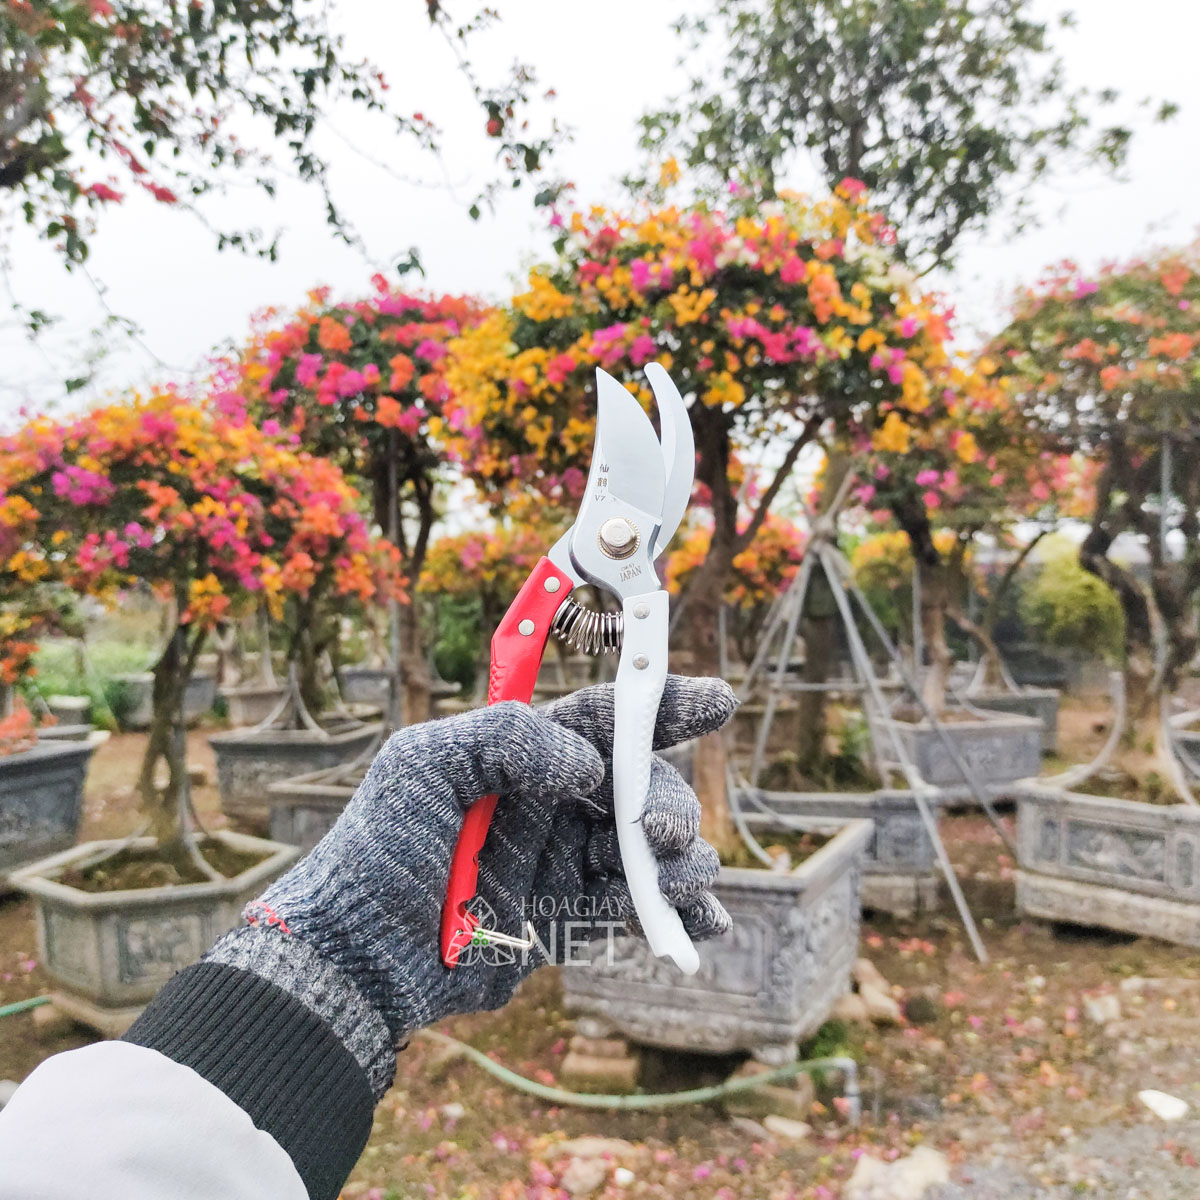 kéo cắt cành cho cây hoa giấy bền sắc